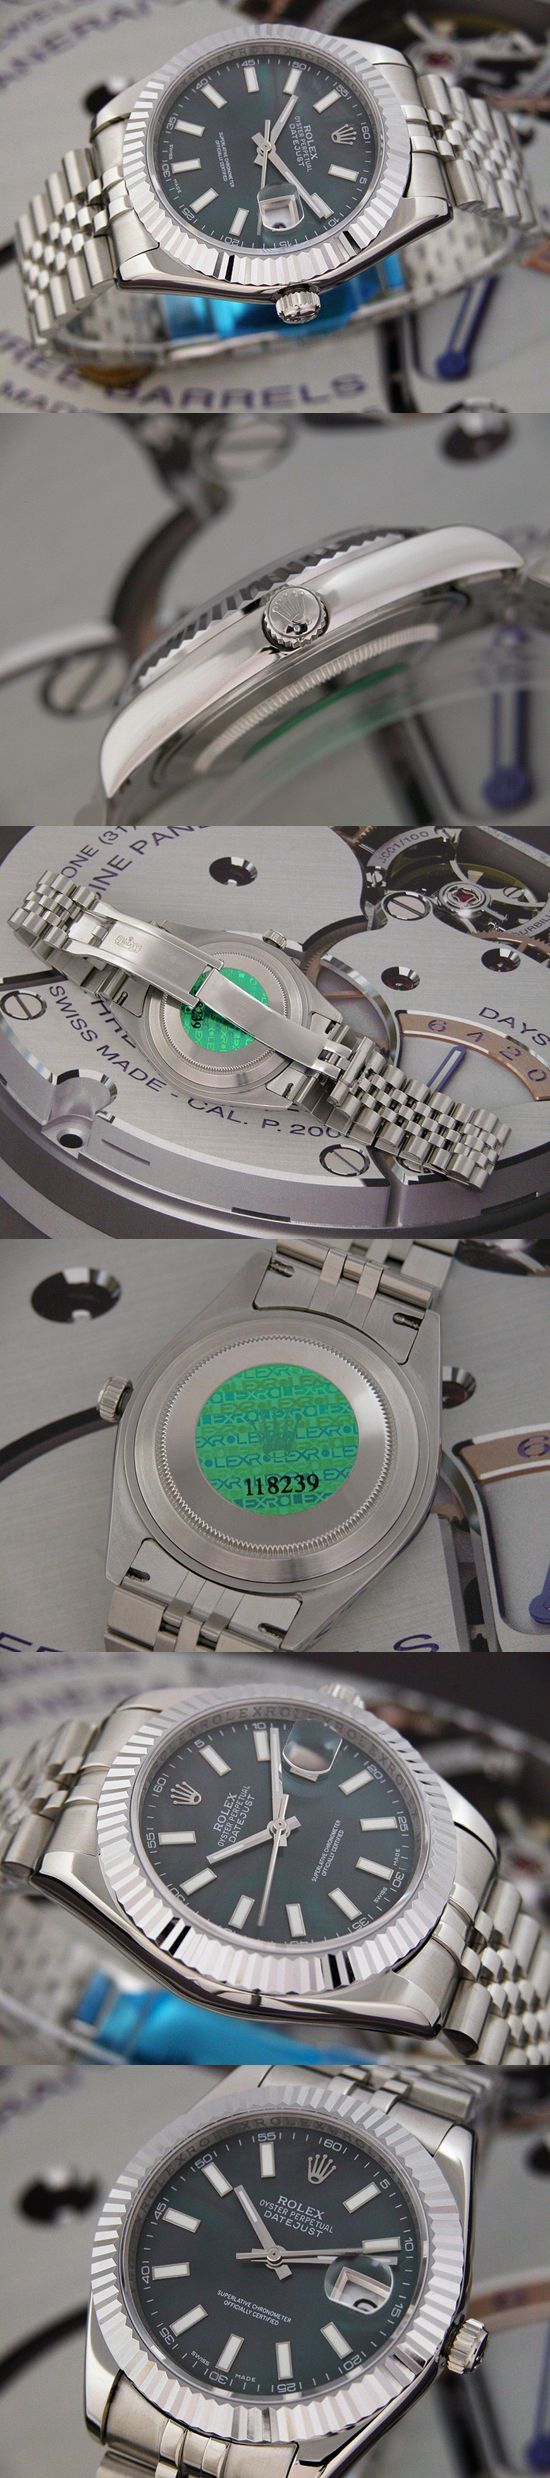 おしゃれなブランド時計がロレックス-デイトジャスト-ROLEX-118239-100-男性用を提供します.